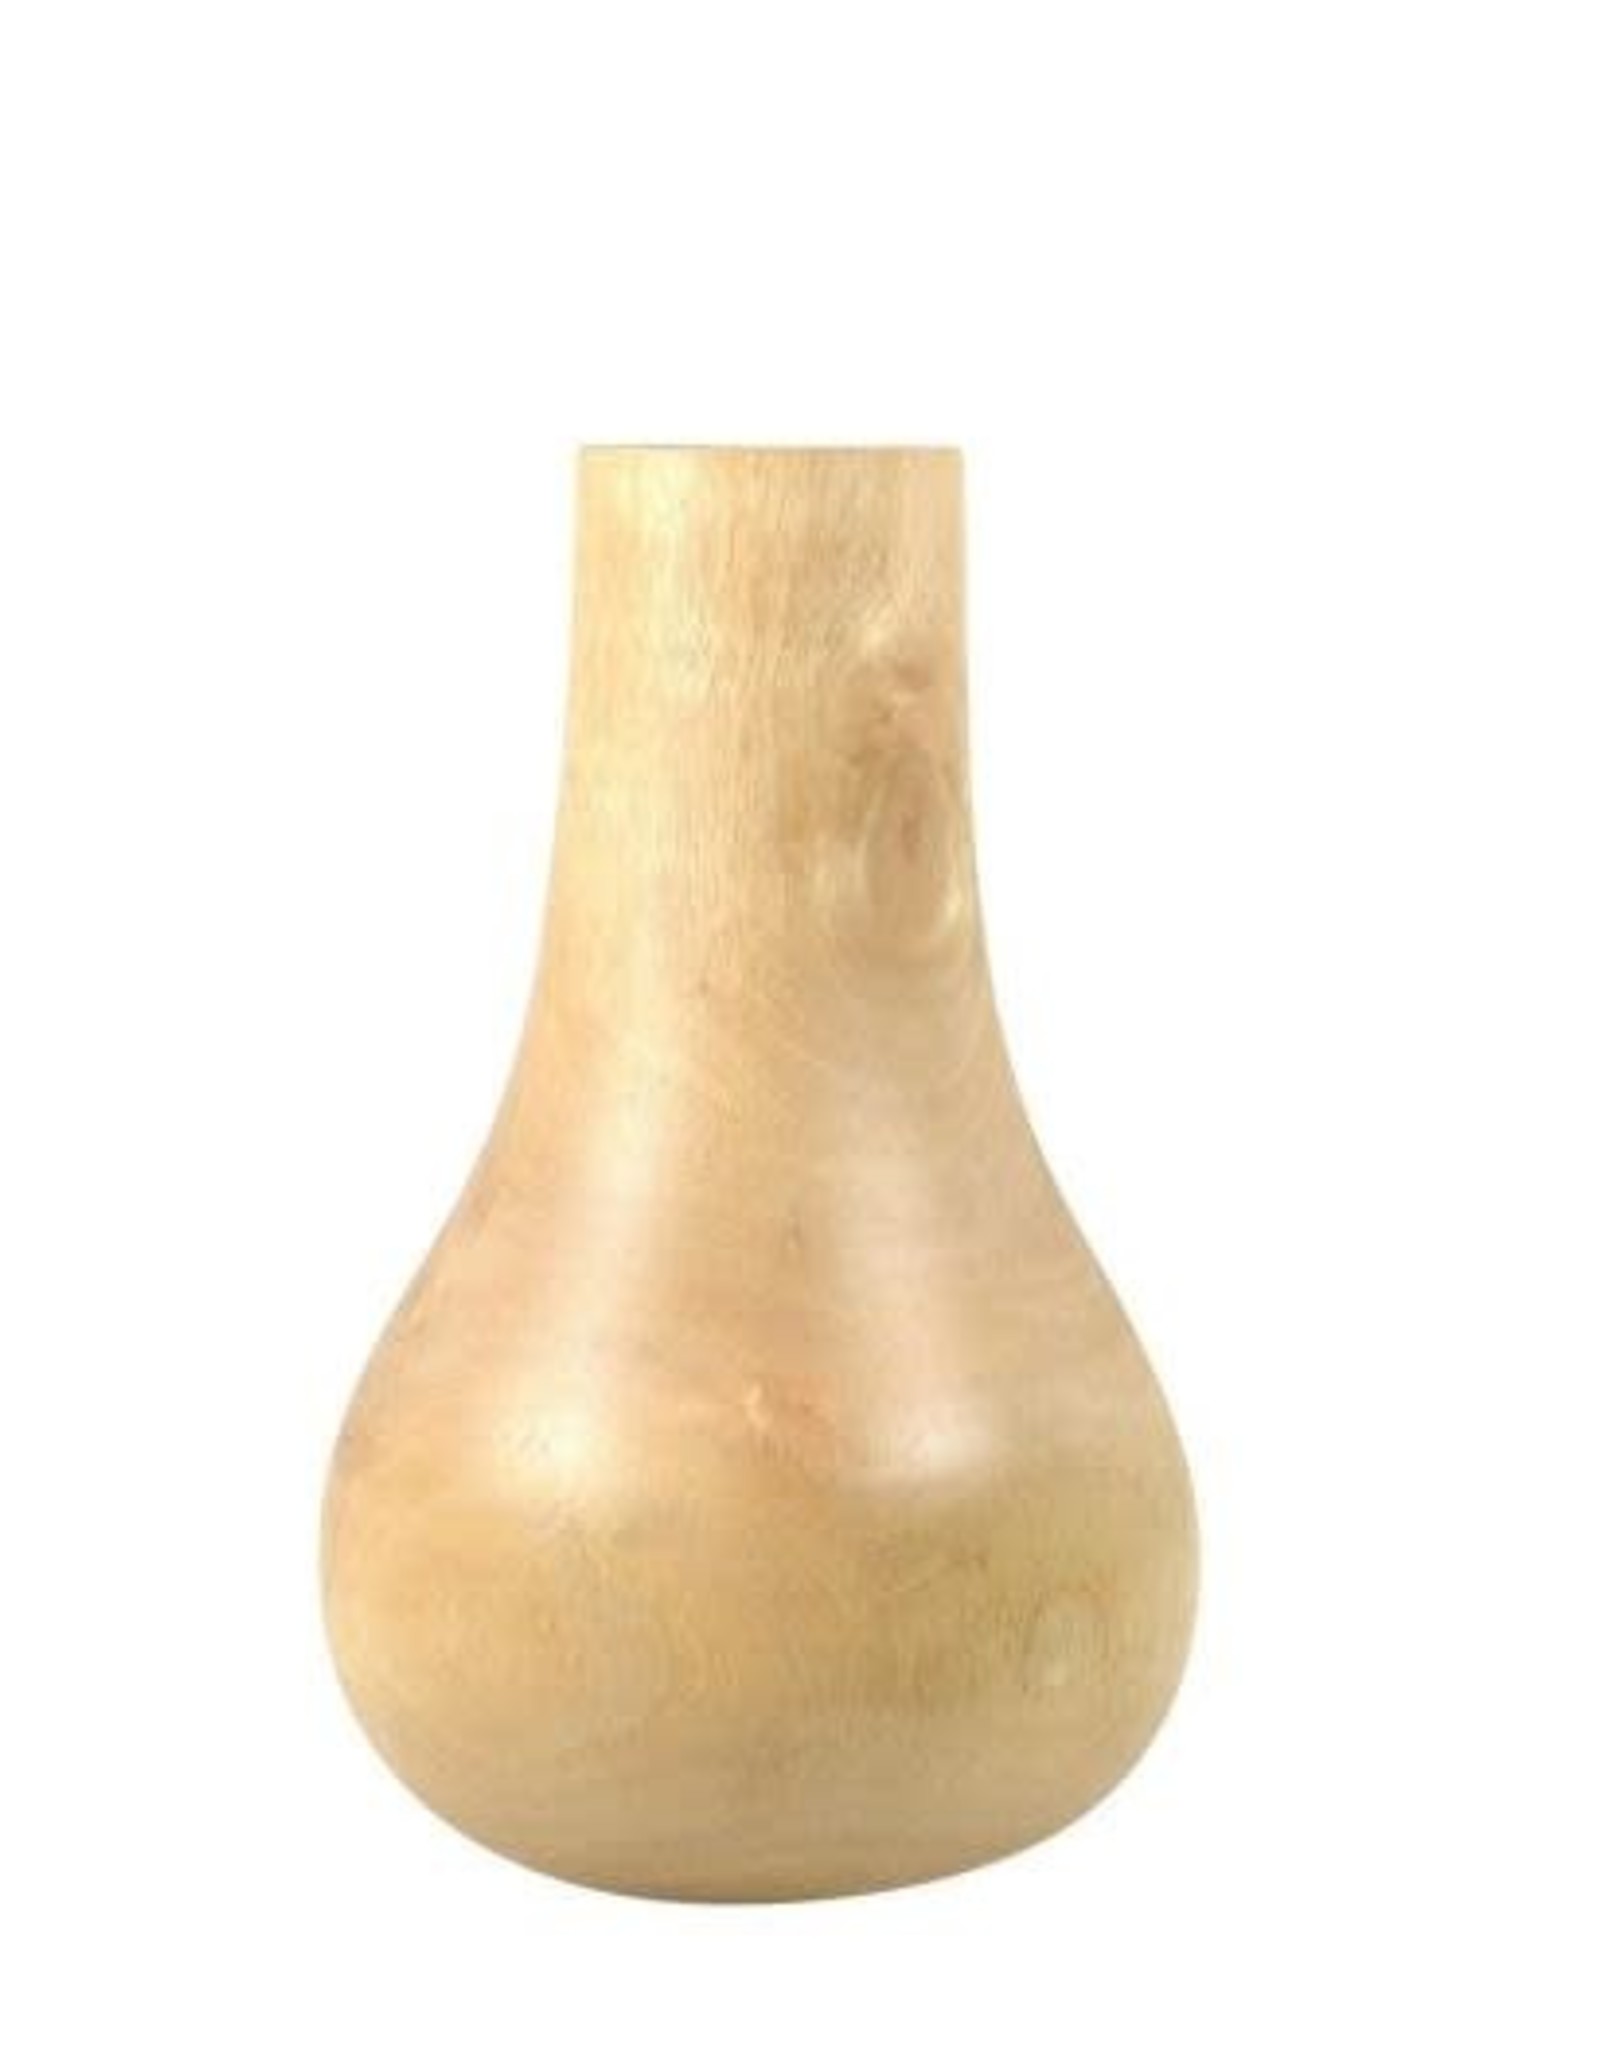 Mango Wood Bulb Vase 9.5"H